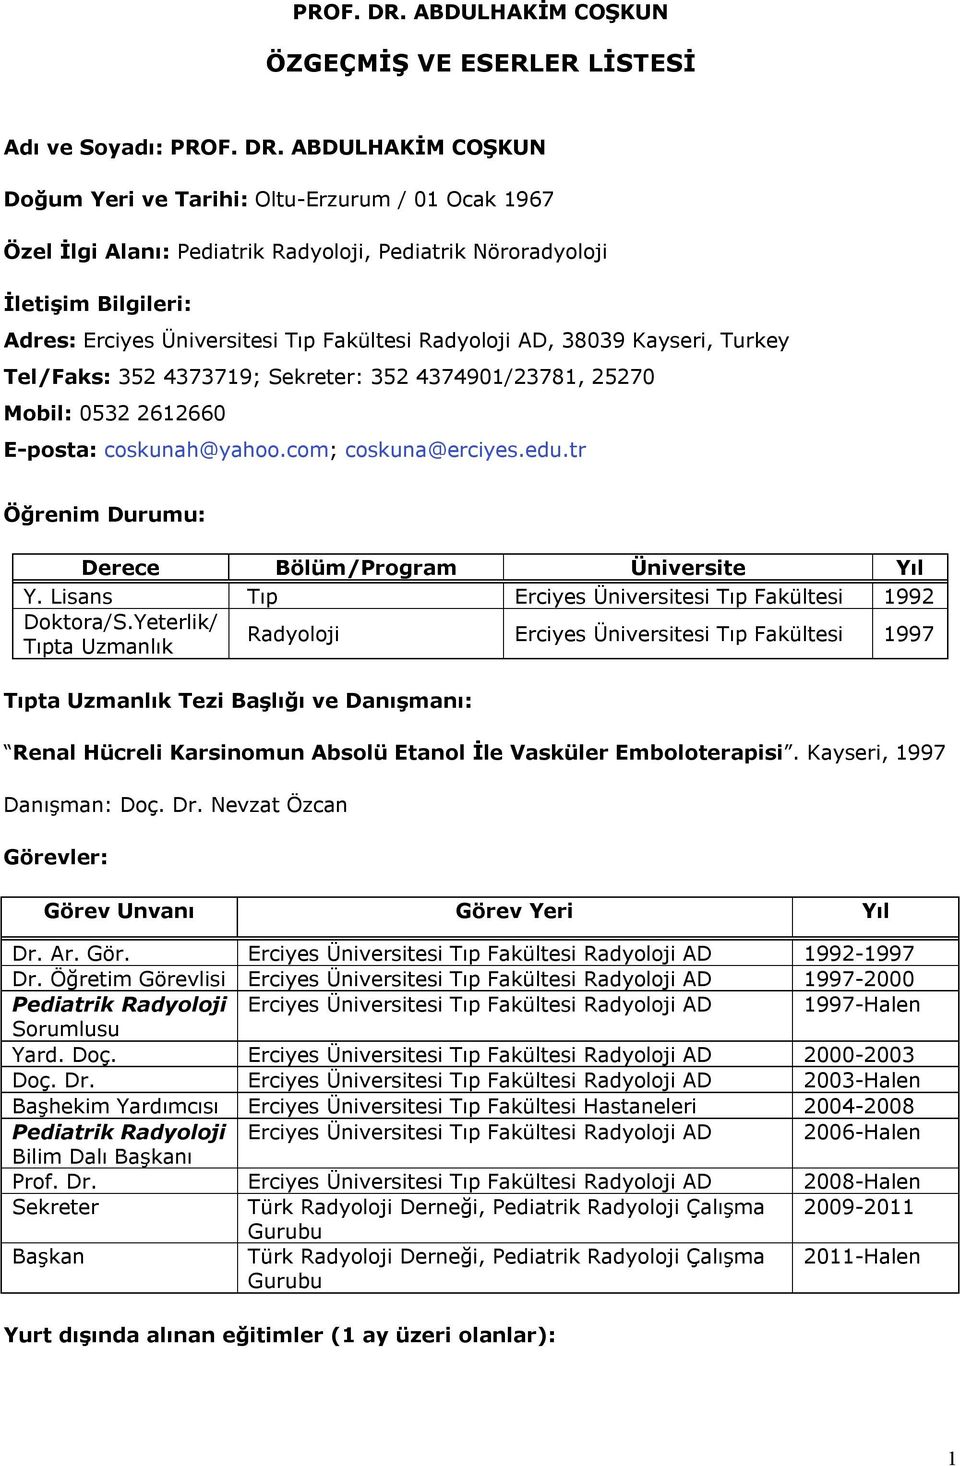 İletişim Bilgileri: Adres: Erciyes Üniversitesi Tıp Fakültesi Radyoloji AD, 38039 Kayseri, Turkey Tel/Faks: 352 4373719; Sekreter: 352 4374901/23781, 25270 Mobil: 0532 2612660 E-posta: coskunah@yahoo.